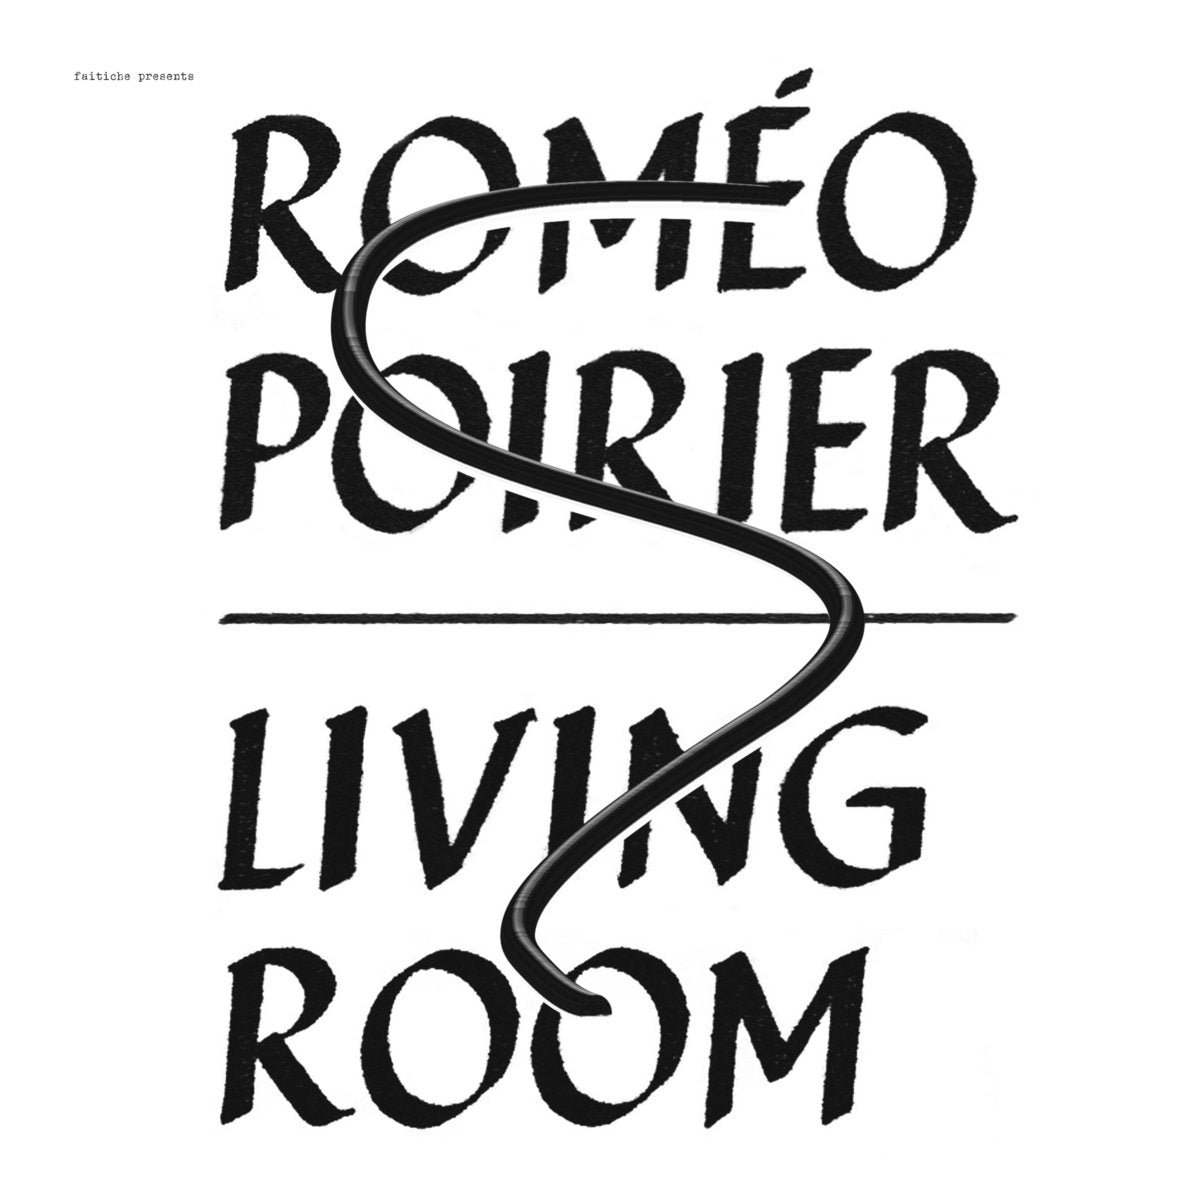 Roméo Poirier - Living Room LP